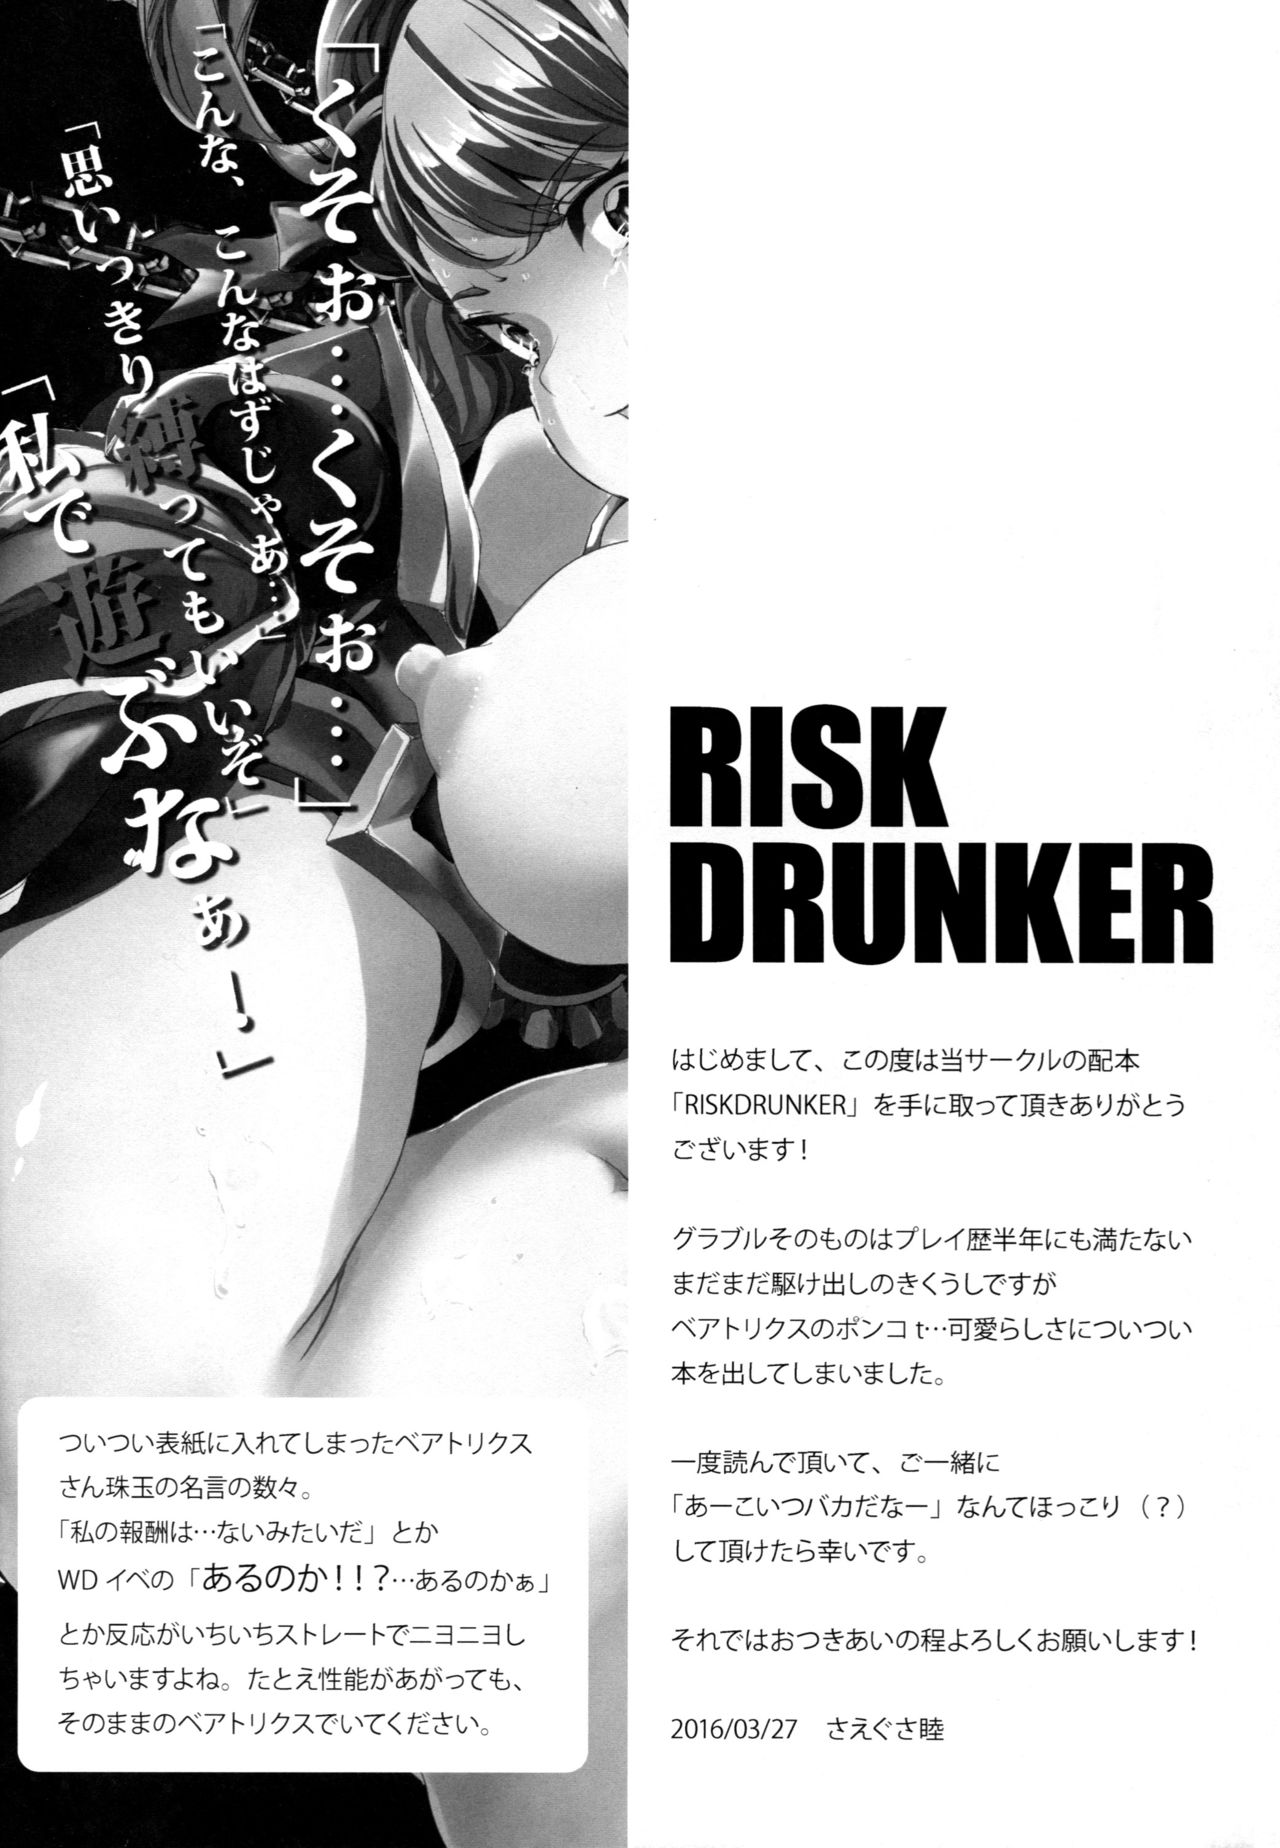 (ファータグランデ騎空祭2) [Raising Staff (さえぐさ睦)] RISK DRUNKER (グランブルーファンタジー)